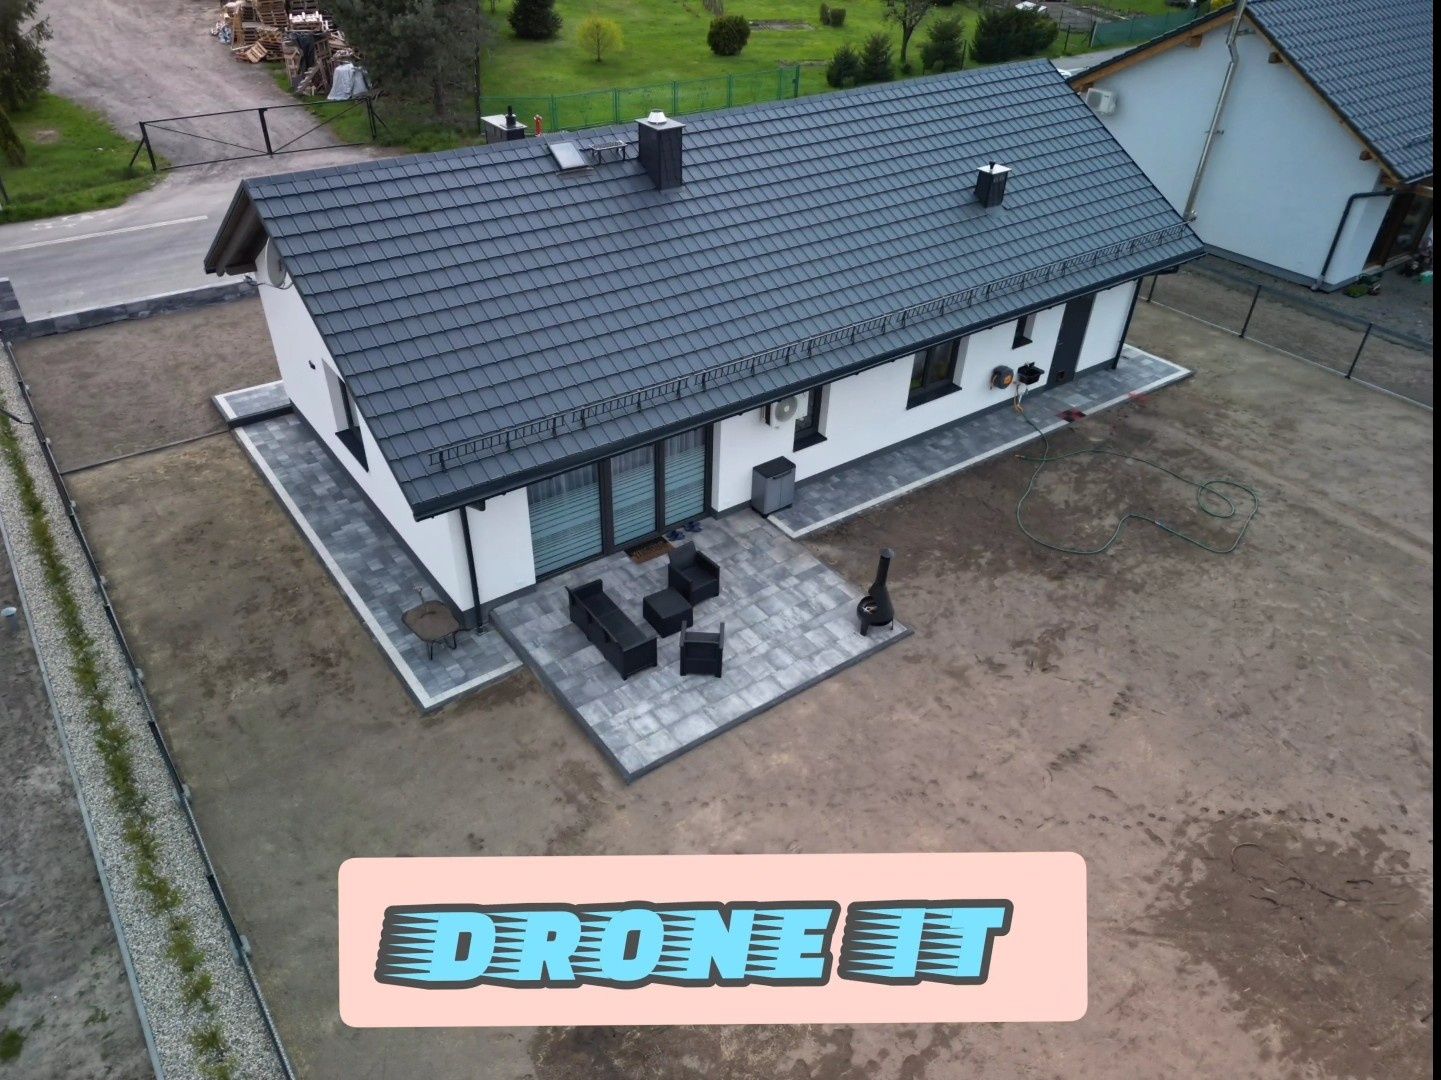 DRONE IT Uslugii dronem , zdjęcia filmy 4K